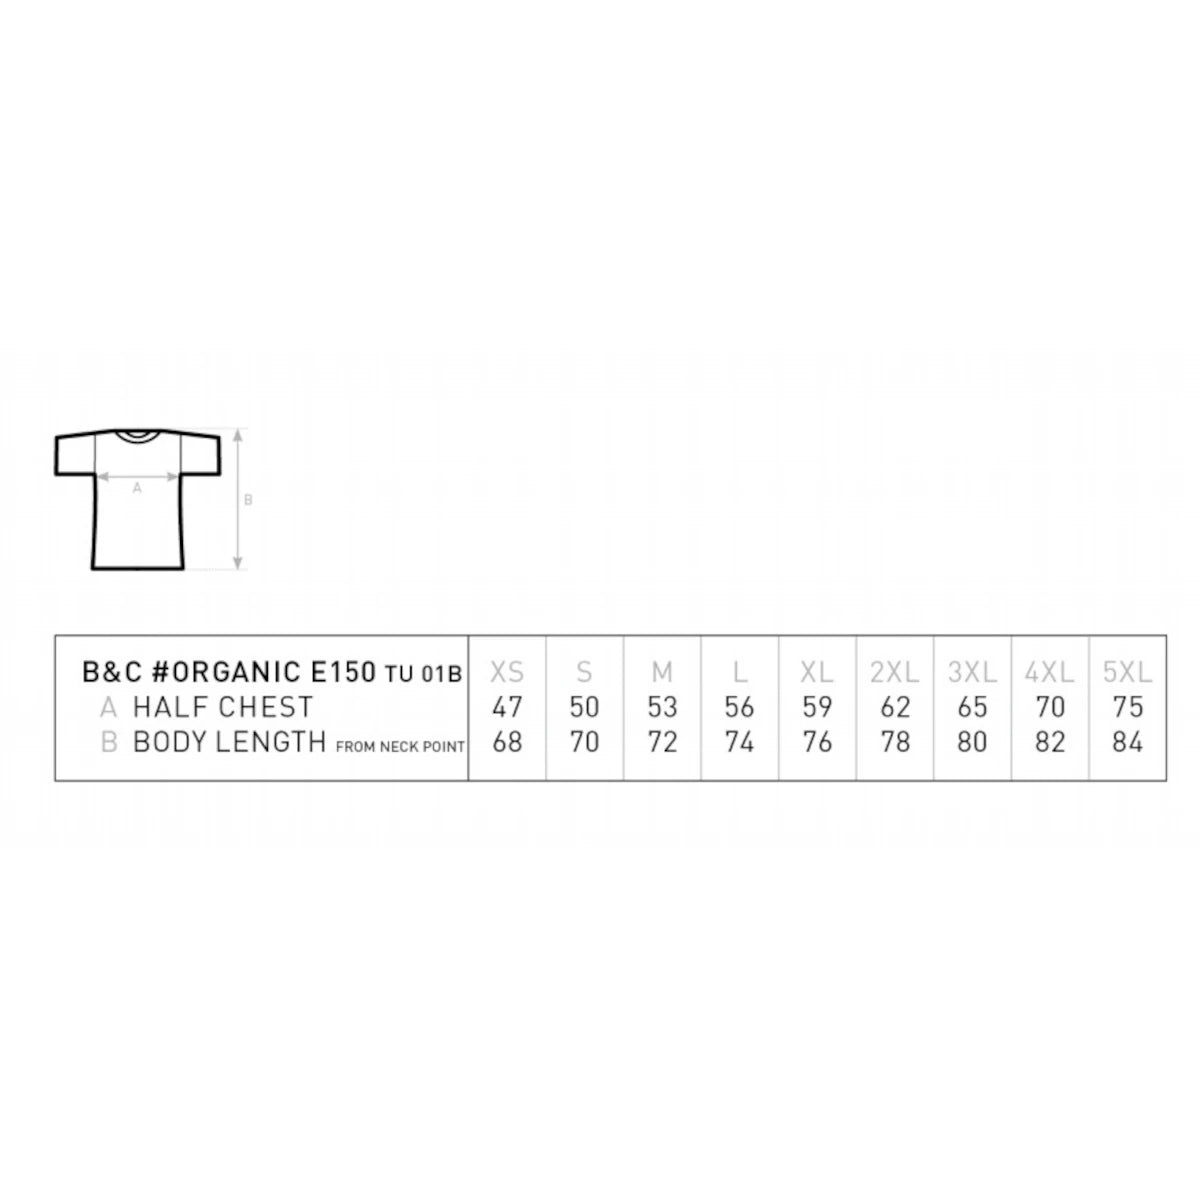 tabla de equivalencia de tallas de las camisetas